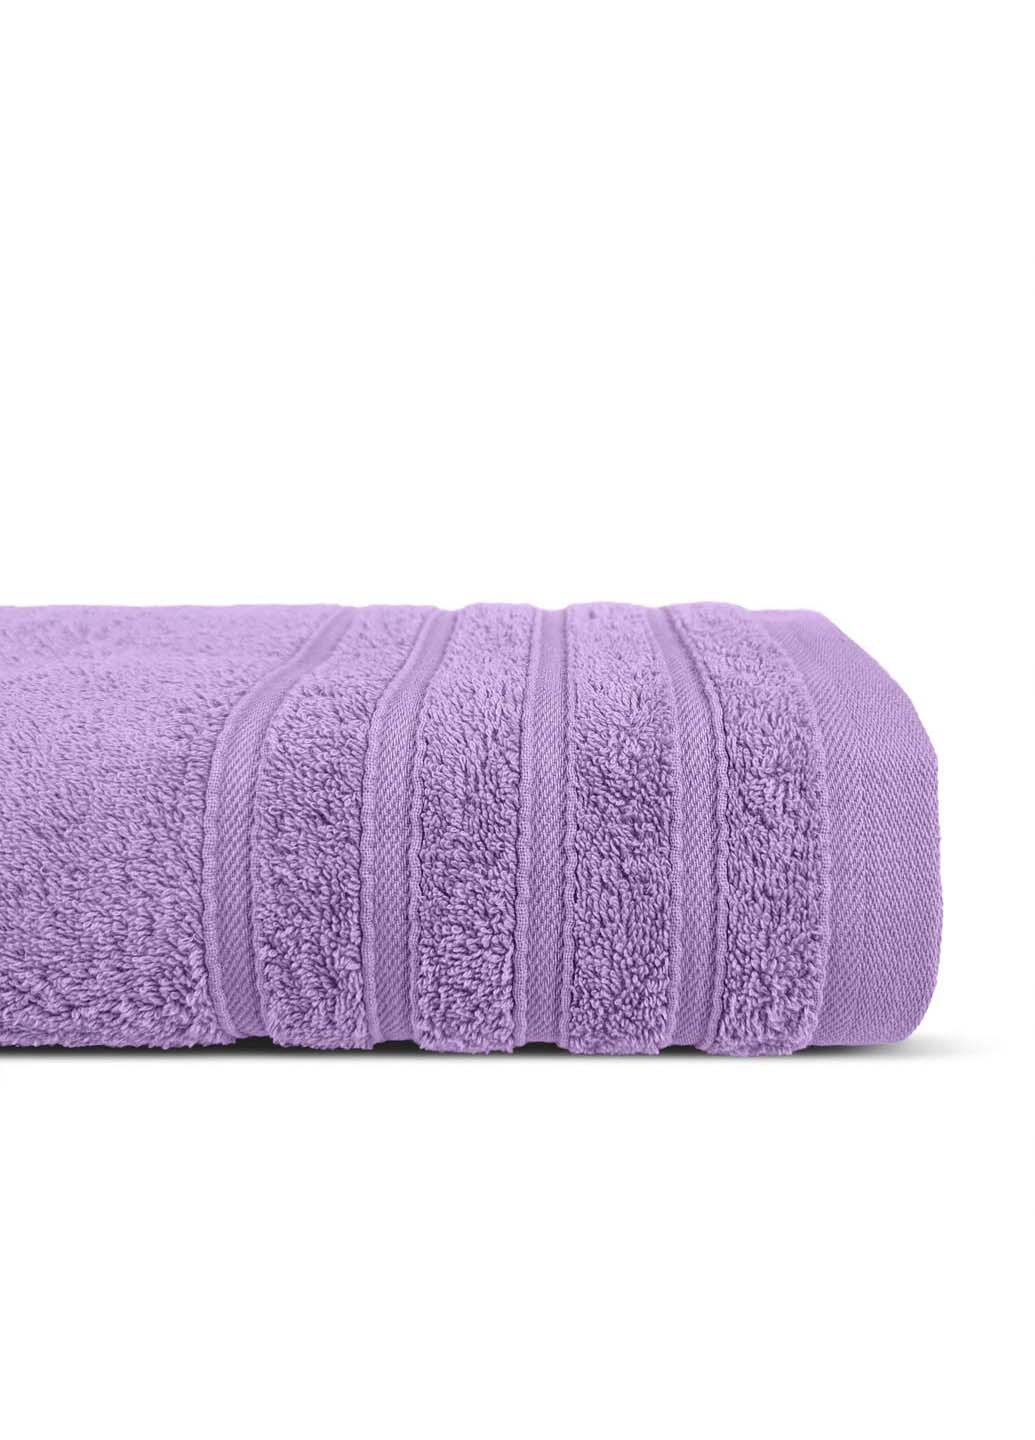 Cosas полотенце махровое 100х150 см фиолетовый производство -